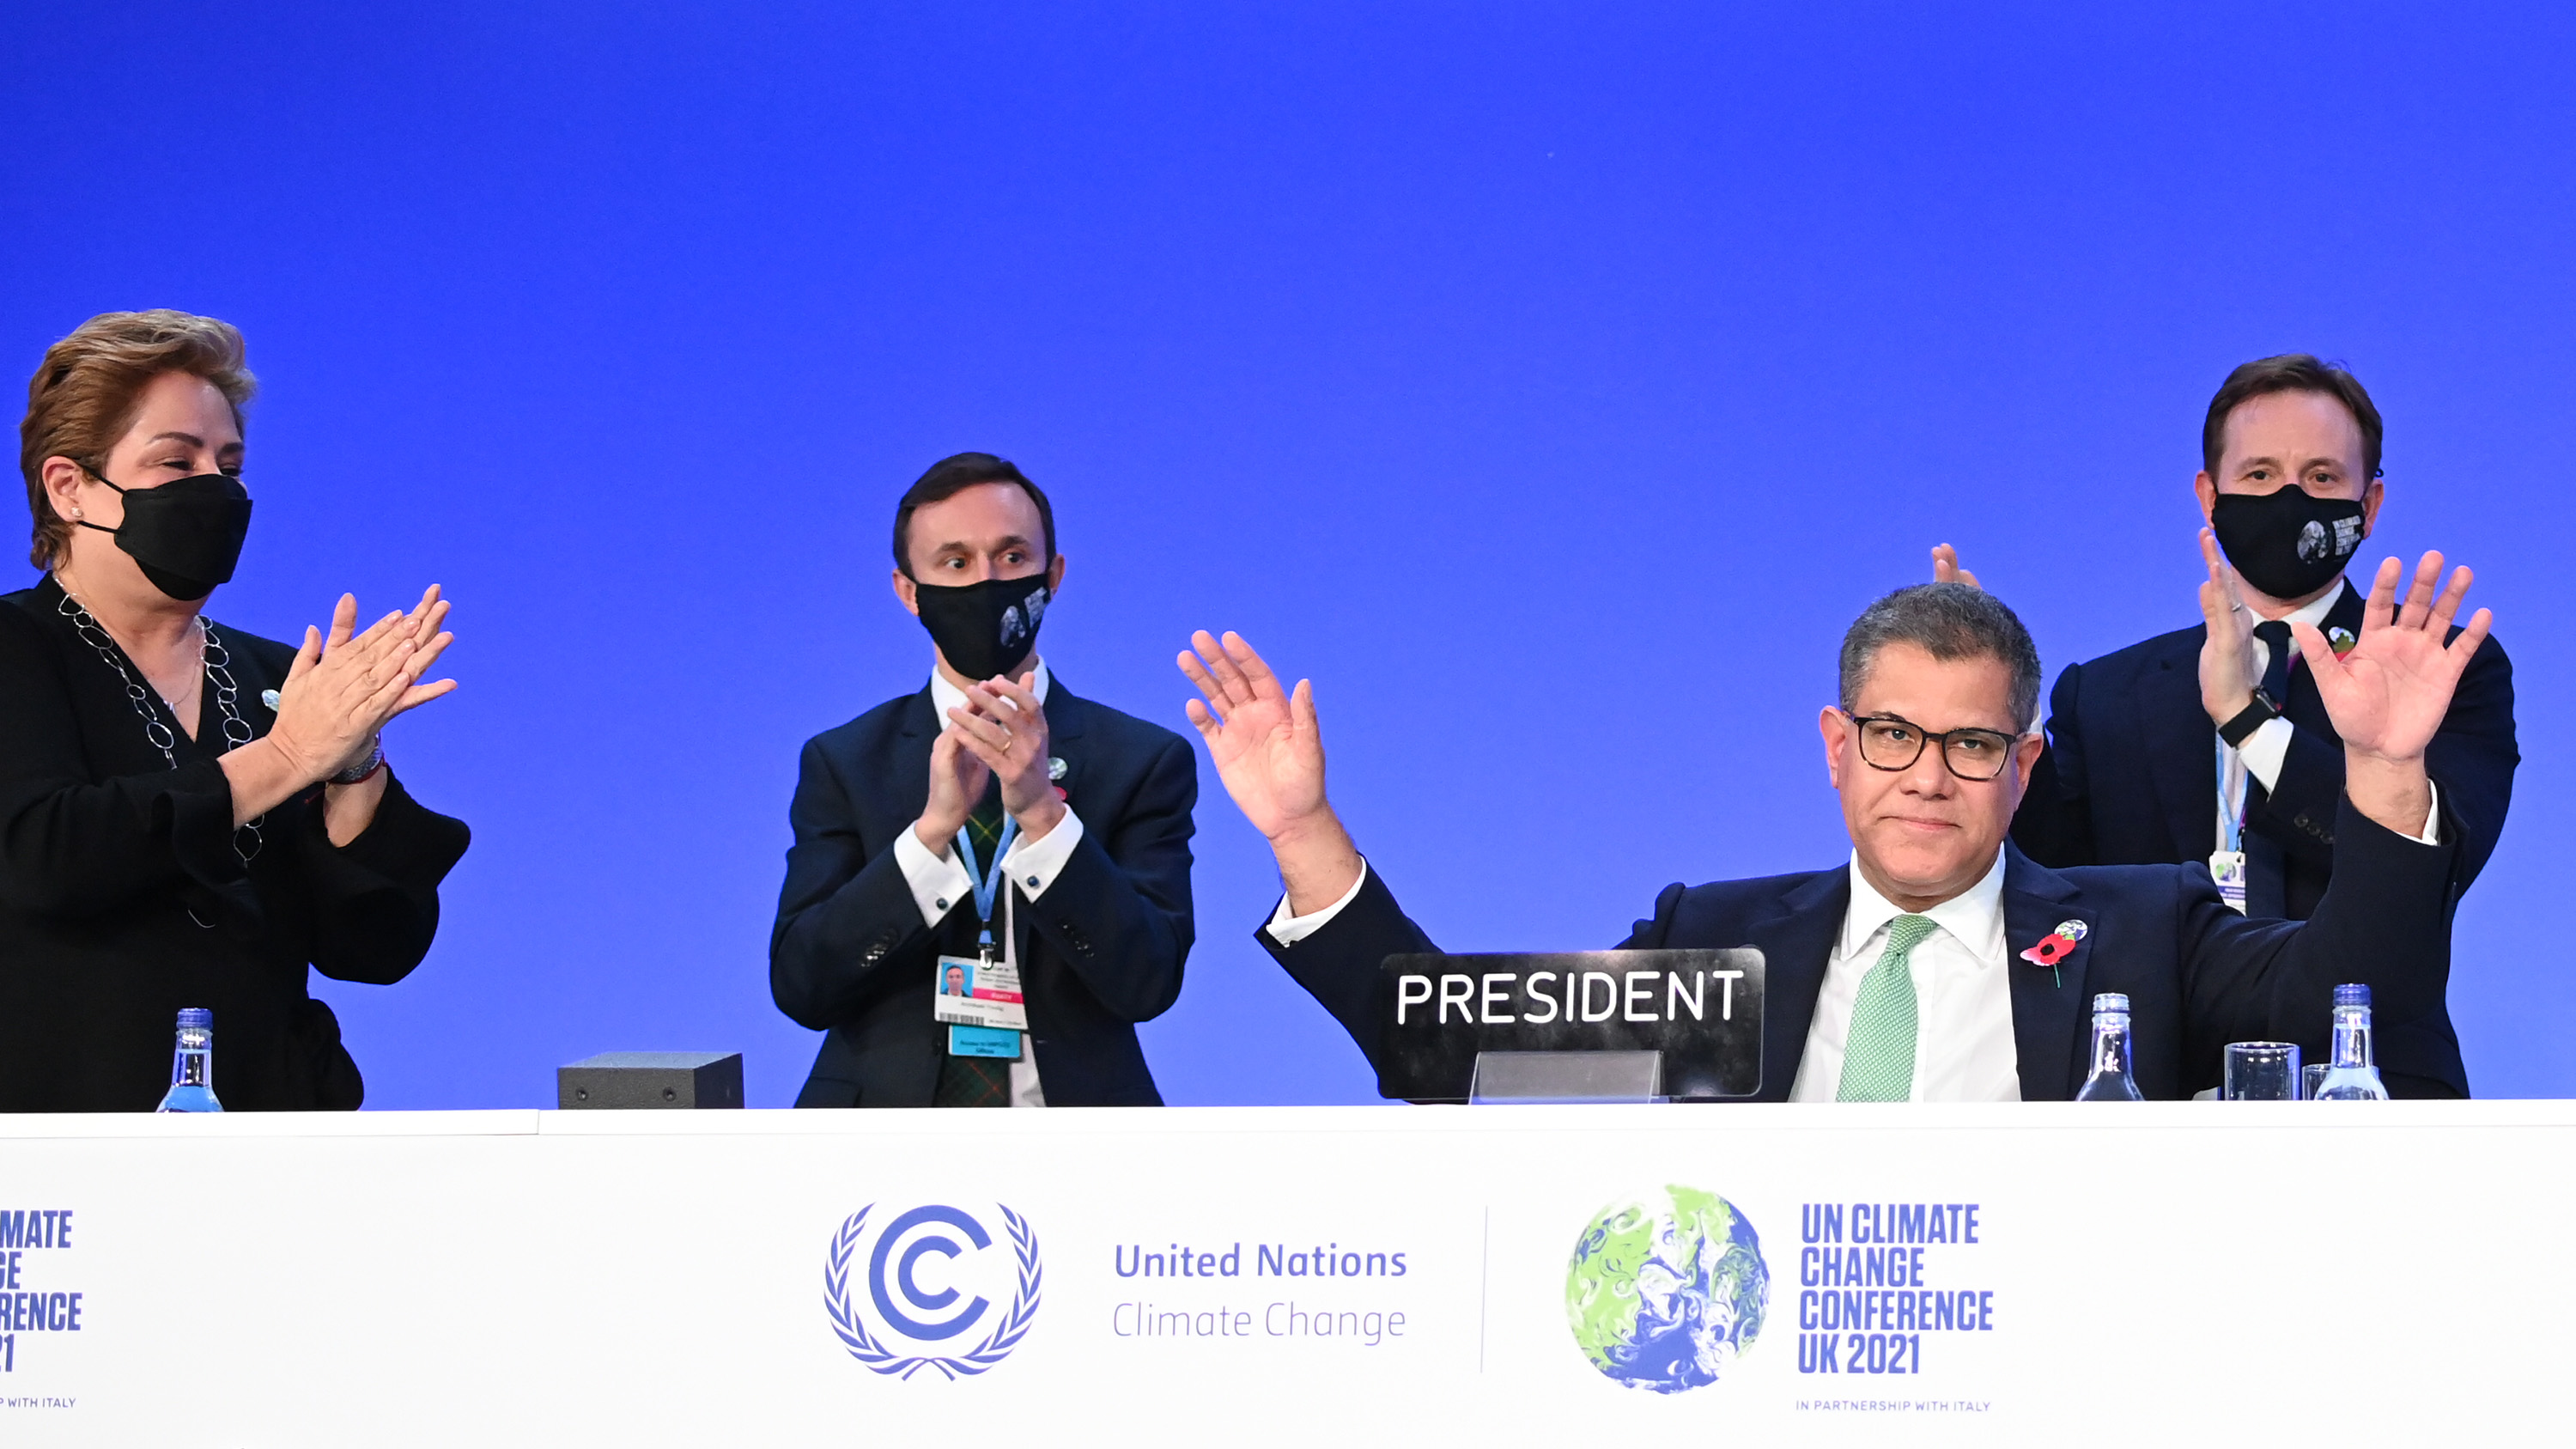 الوک شارما رئیس COP26 پس از ایراد سخنرانی پایانی در COP26 مورد تشویق قرار گرفت